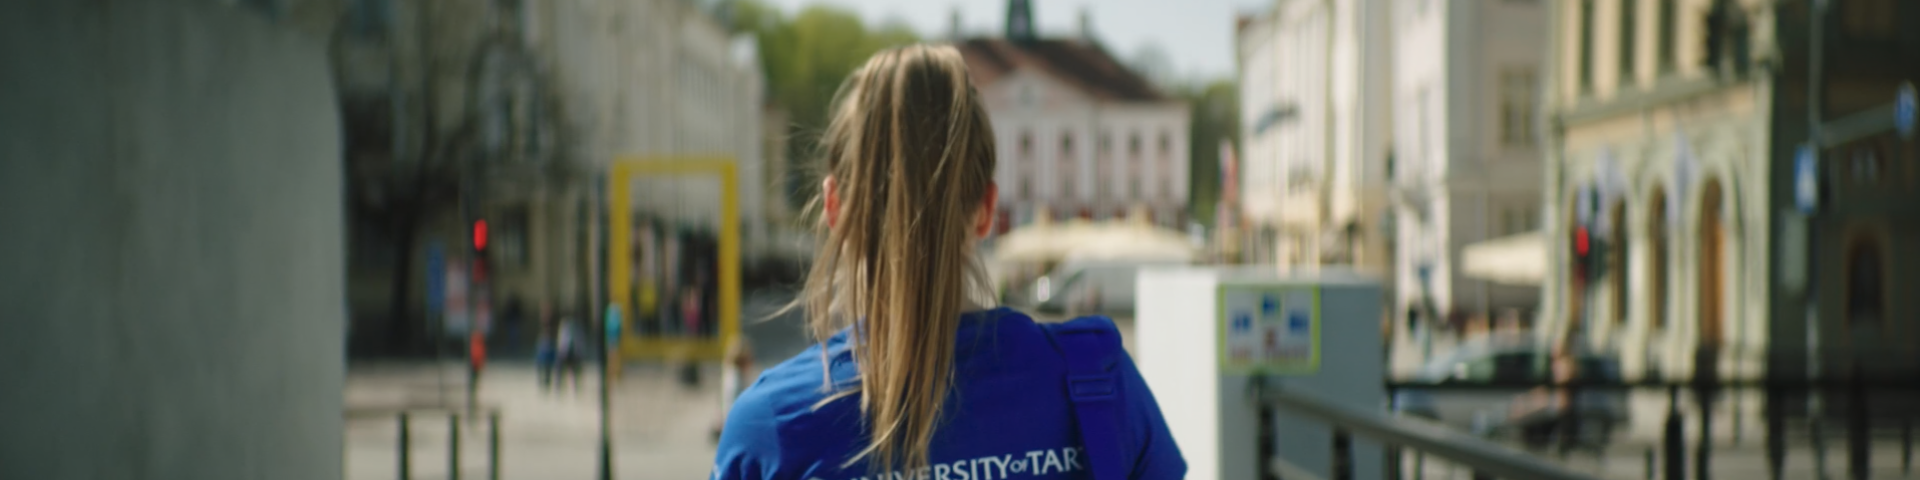 Tartu Ülikooli tudeng kaarsillal (turundusvideo kaader)